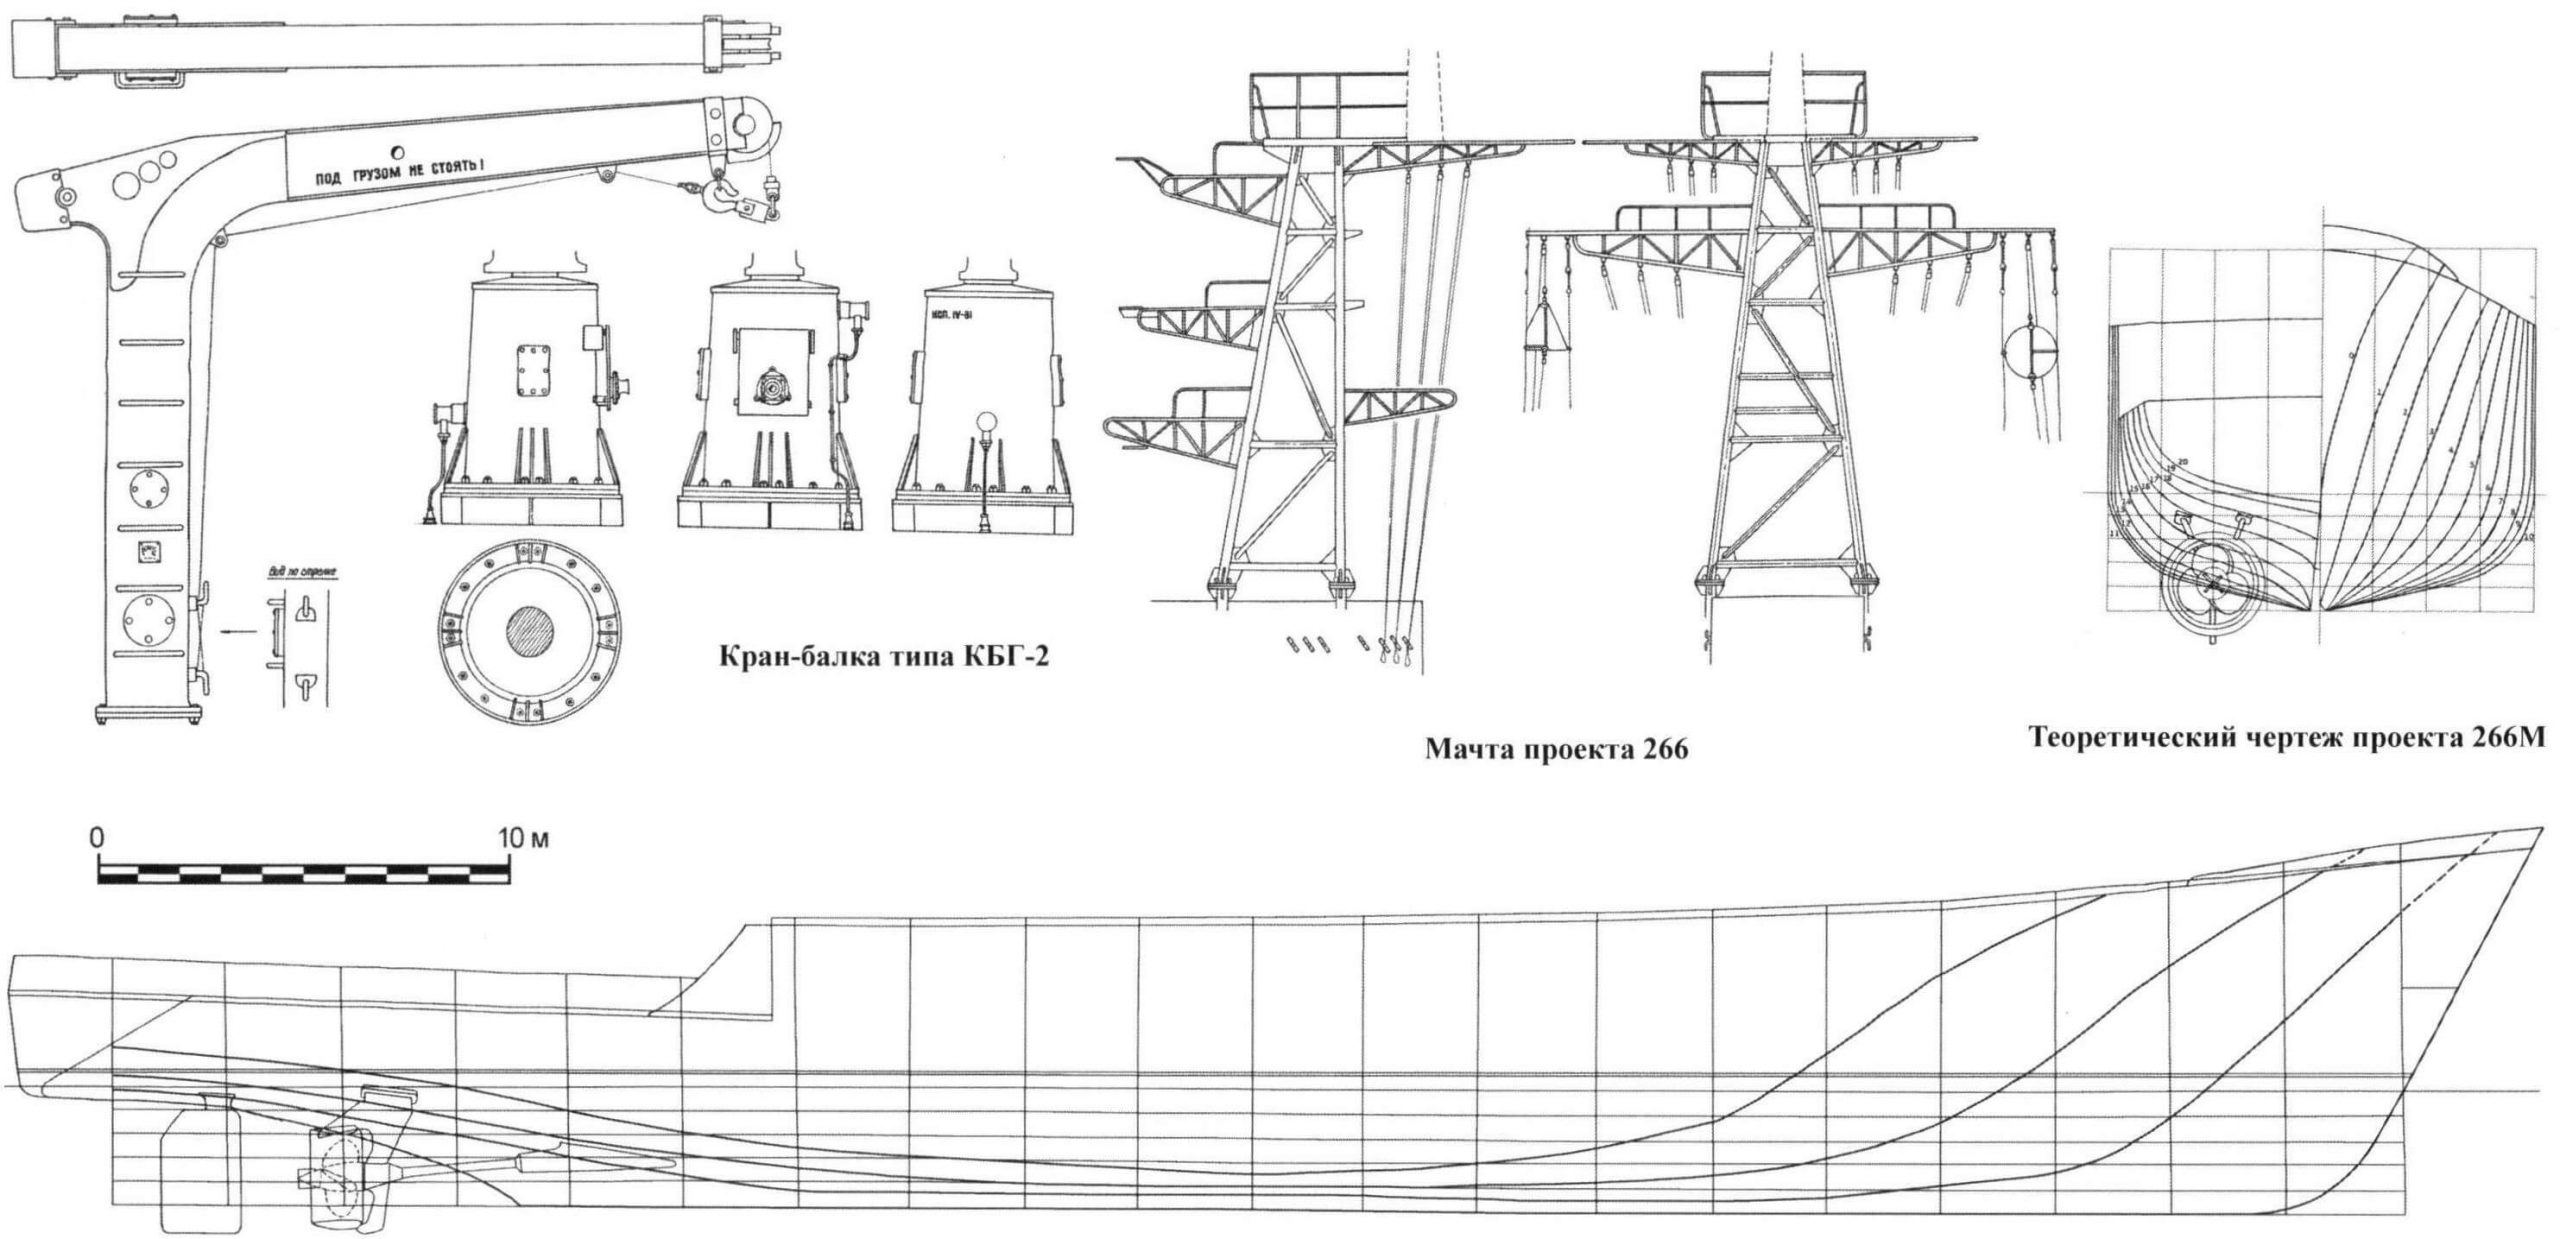 Морской тральщик проекта 266М